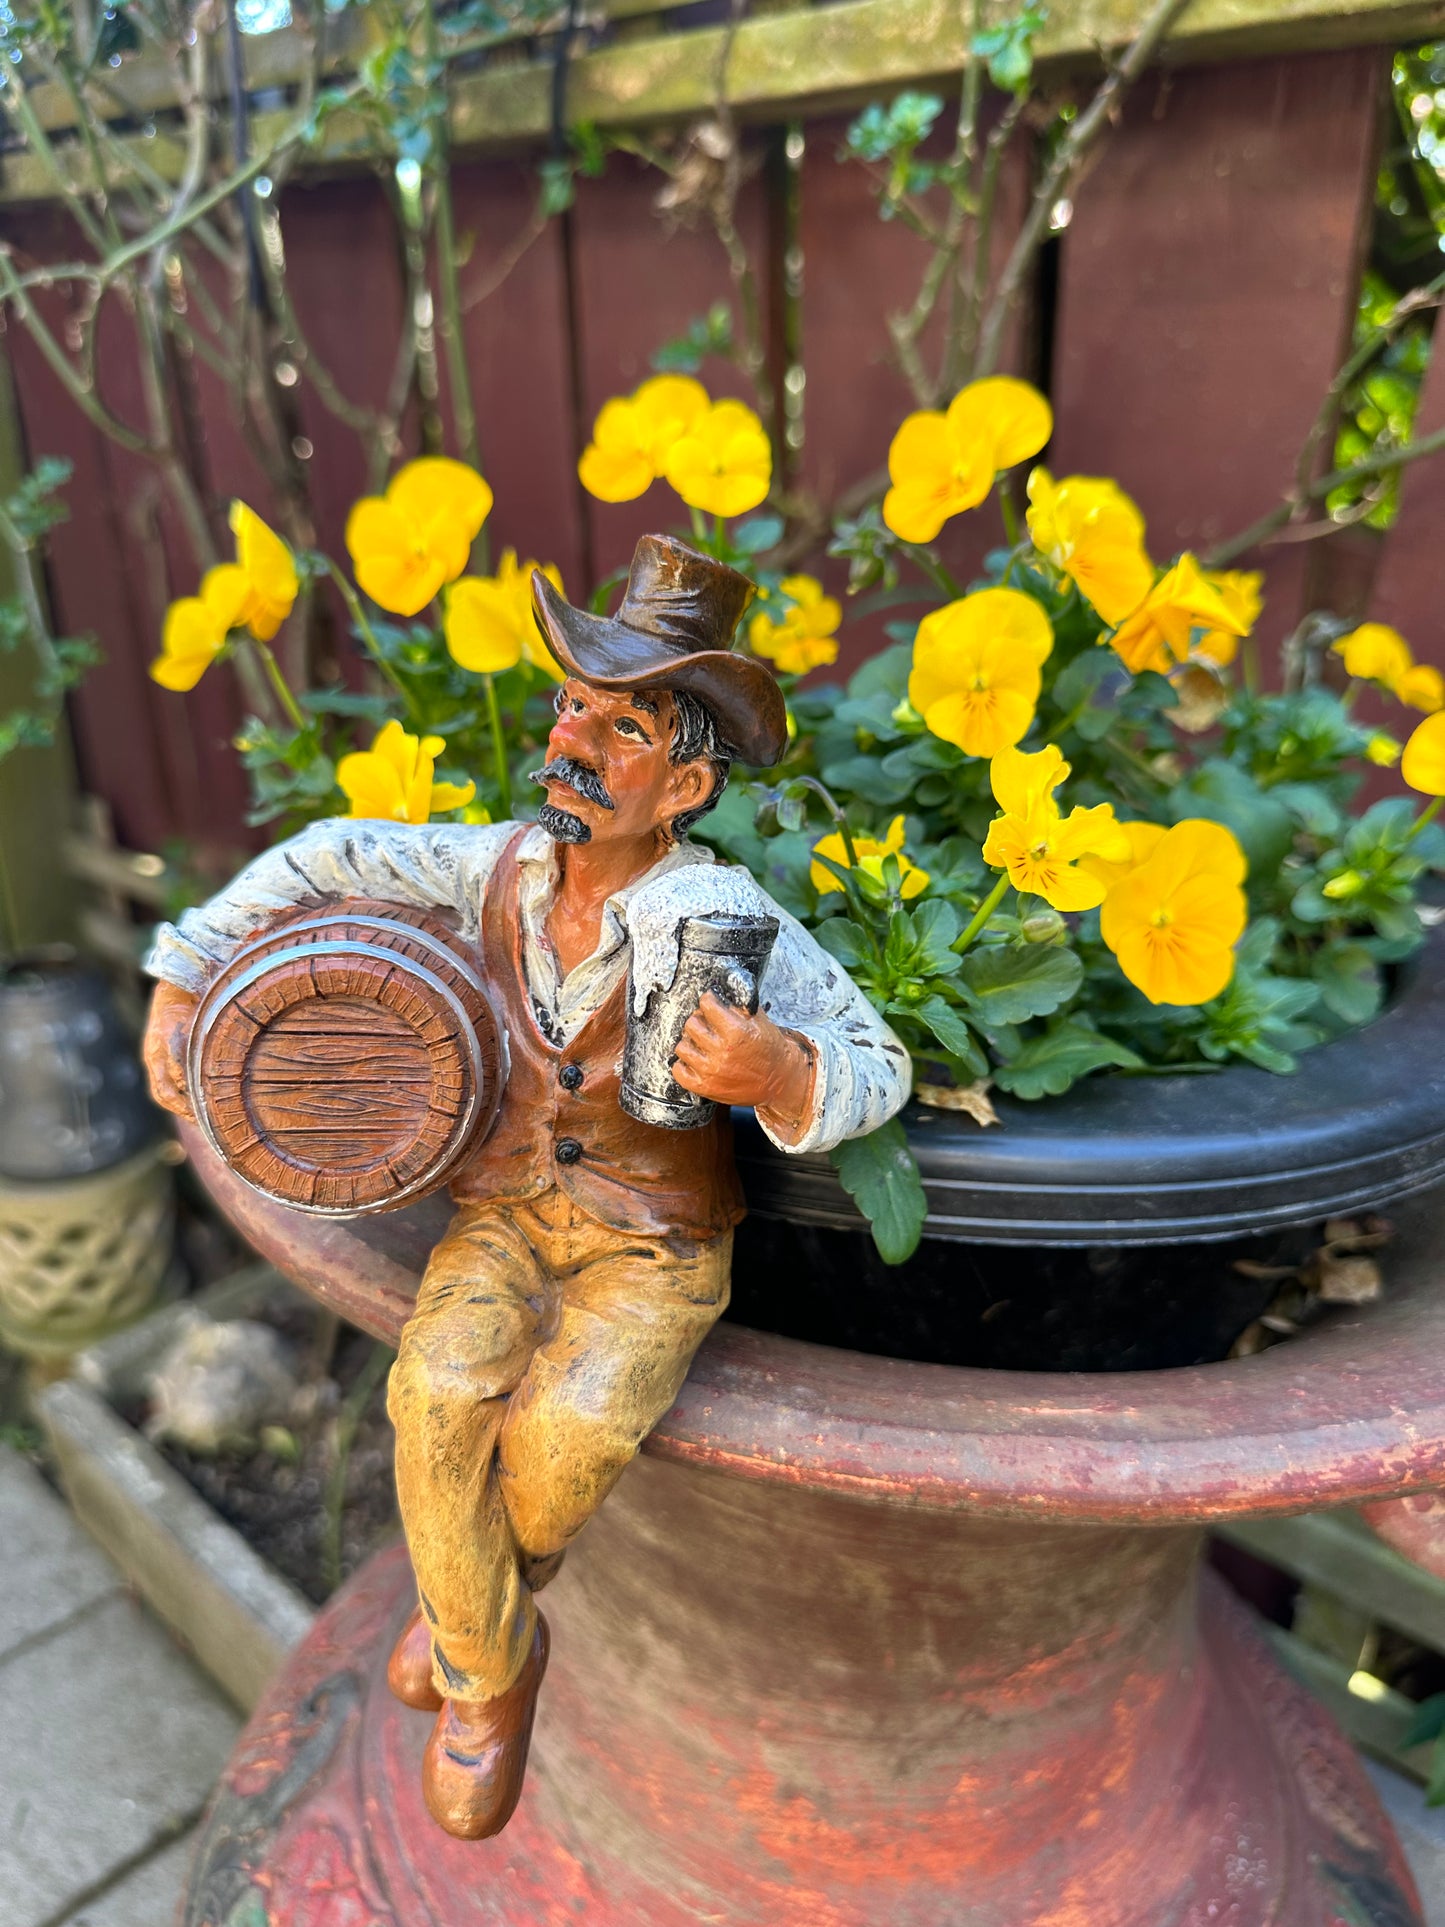 Beer Barrel Bob garden Art Figurine